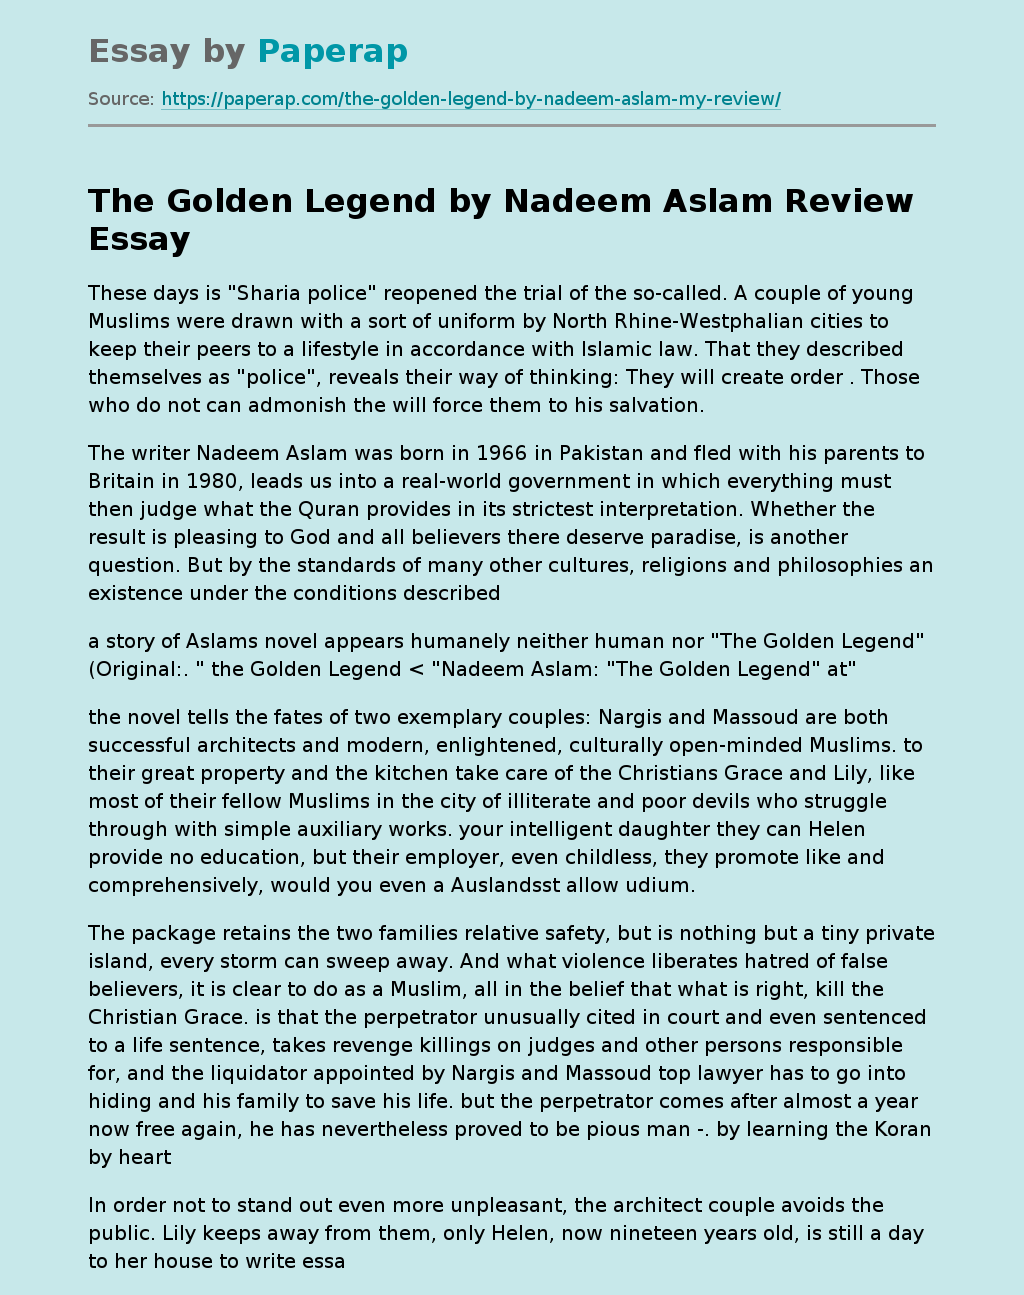 "The Golden Legend" by Nadeem Aslam